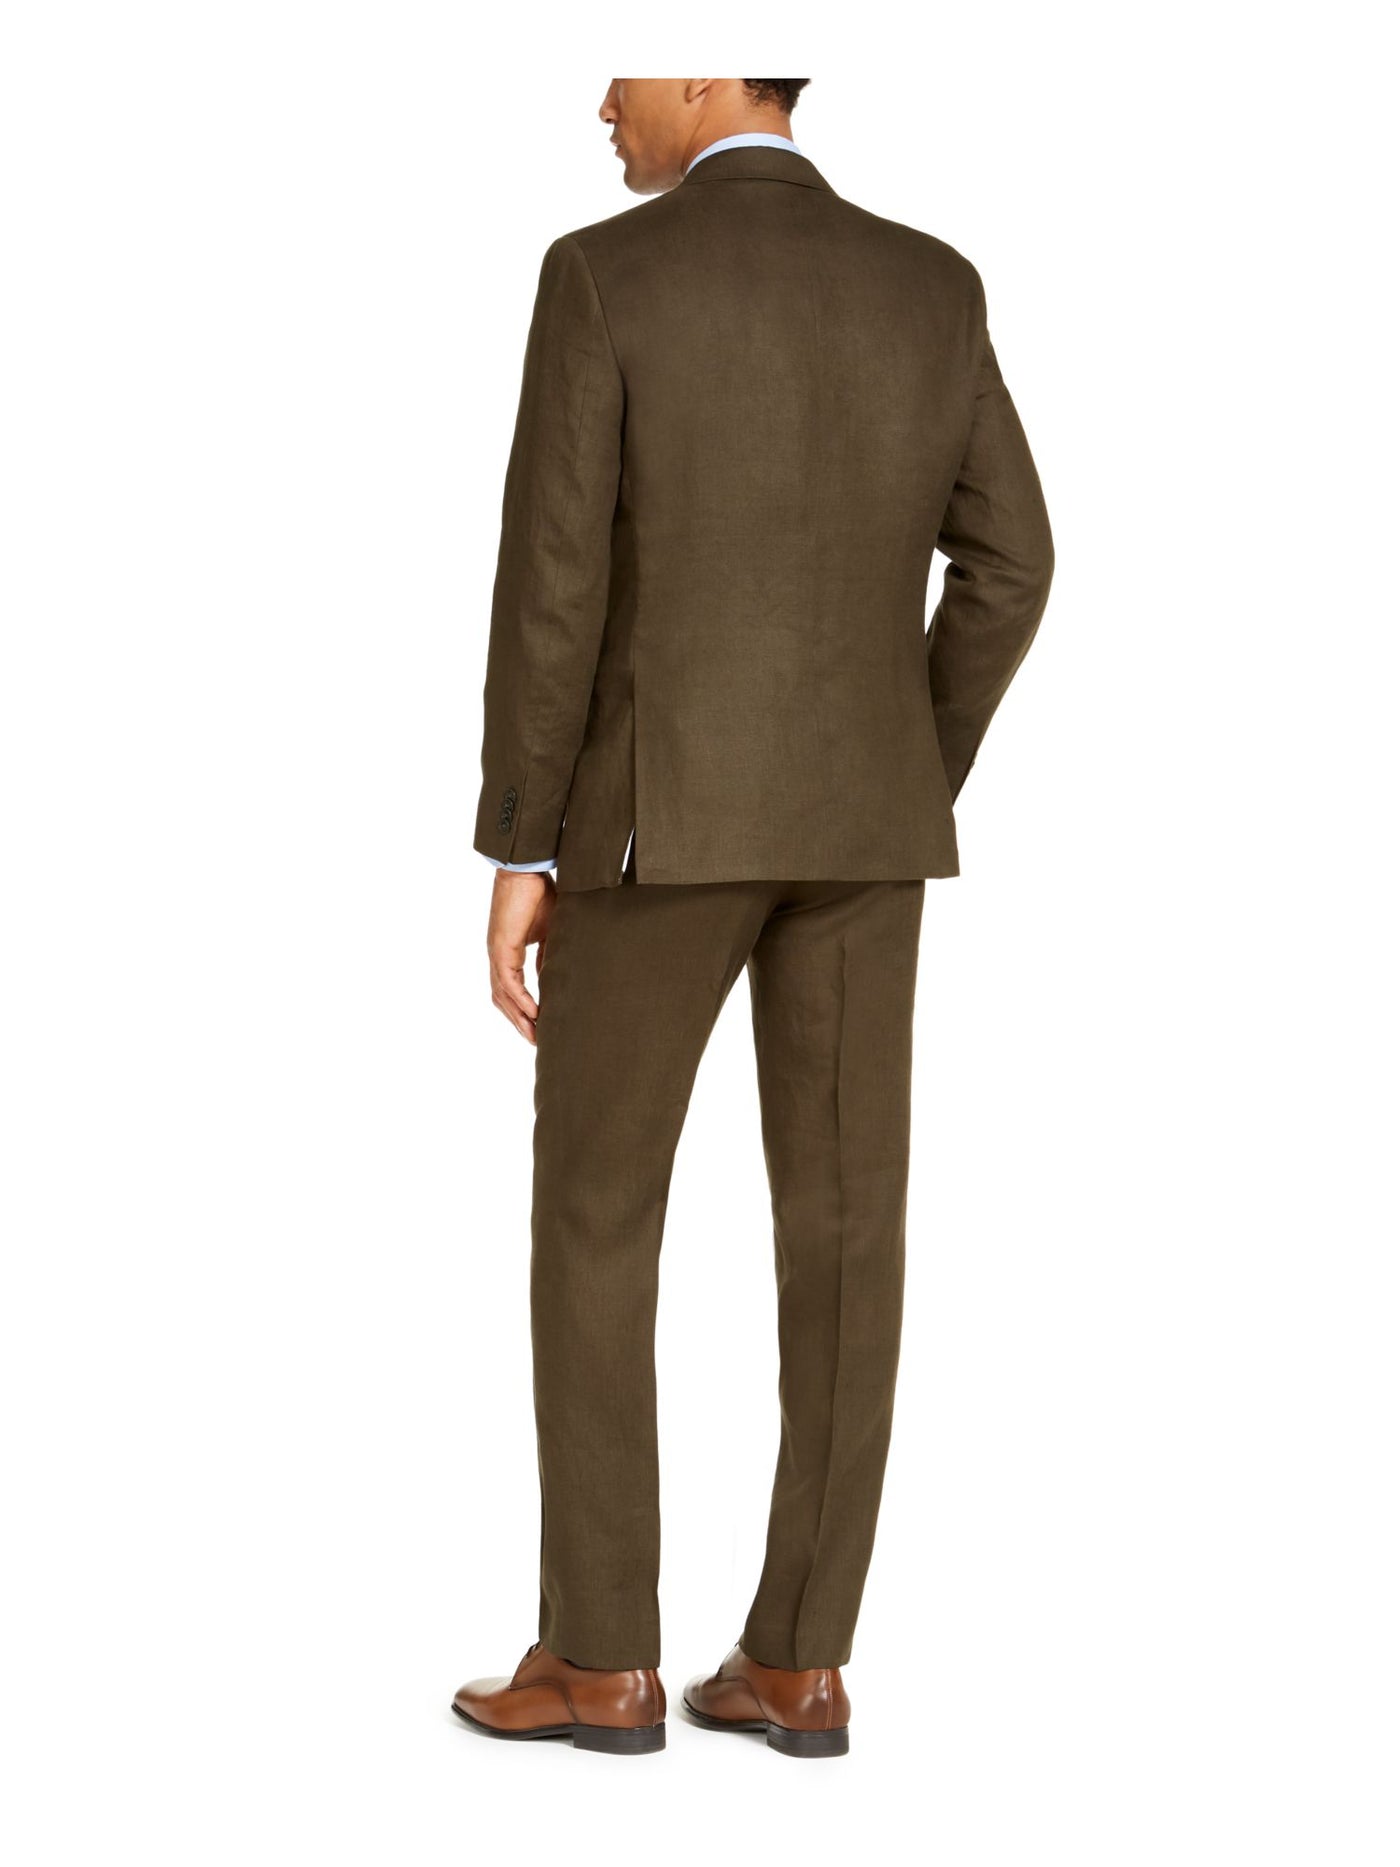 TOMMY HILFIGER Mens Green Lined Regular Fit Suit Separate Blazer Jacket 40R